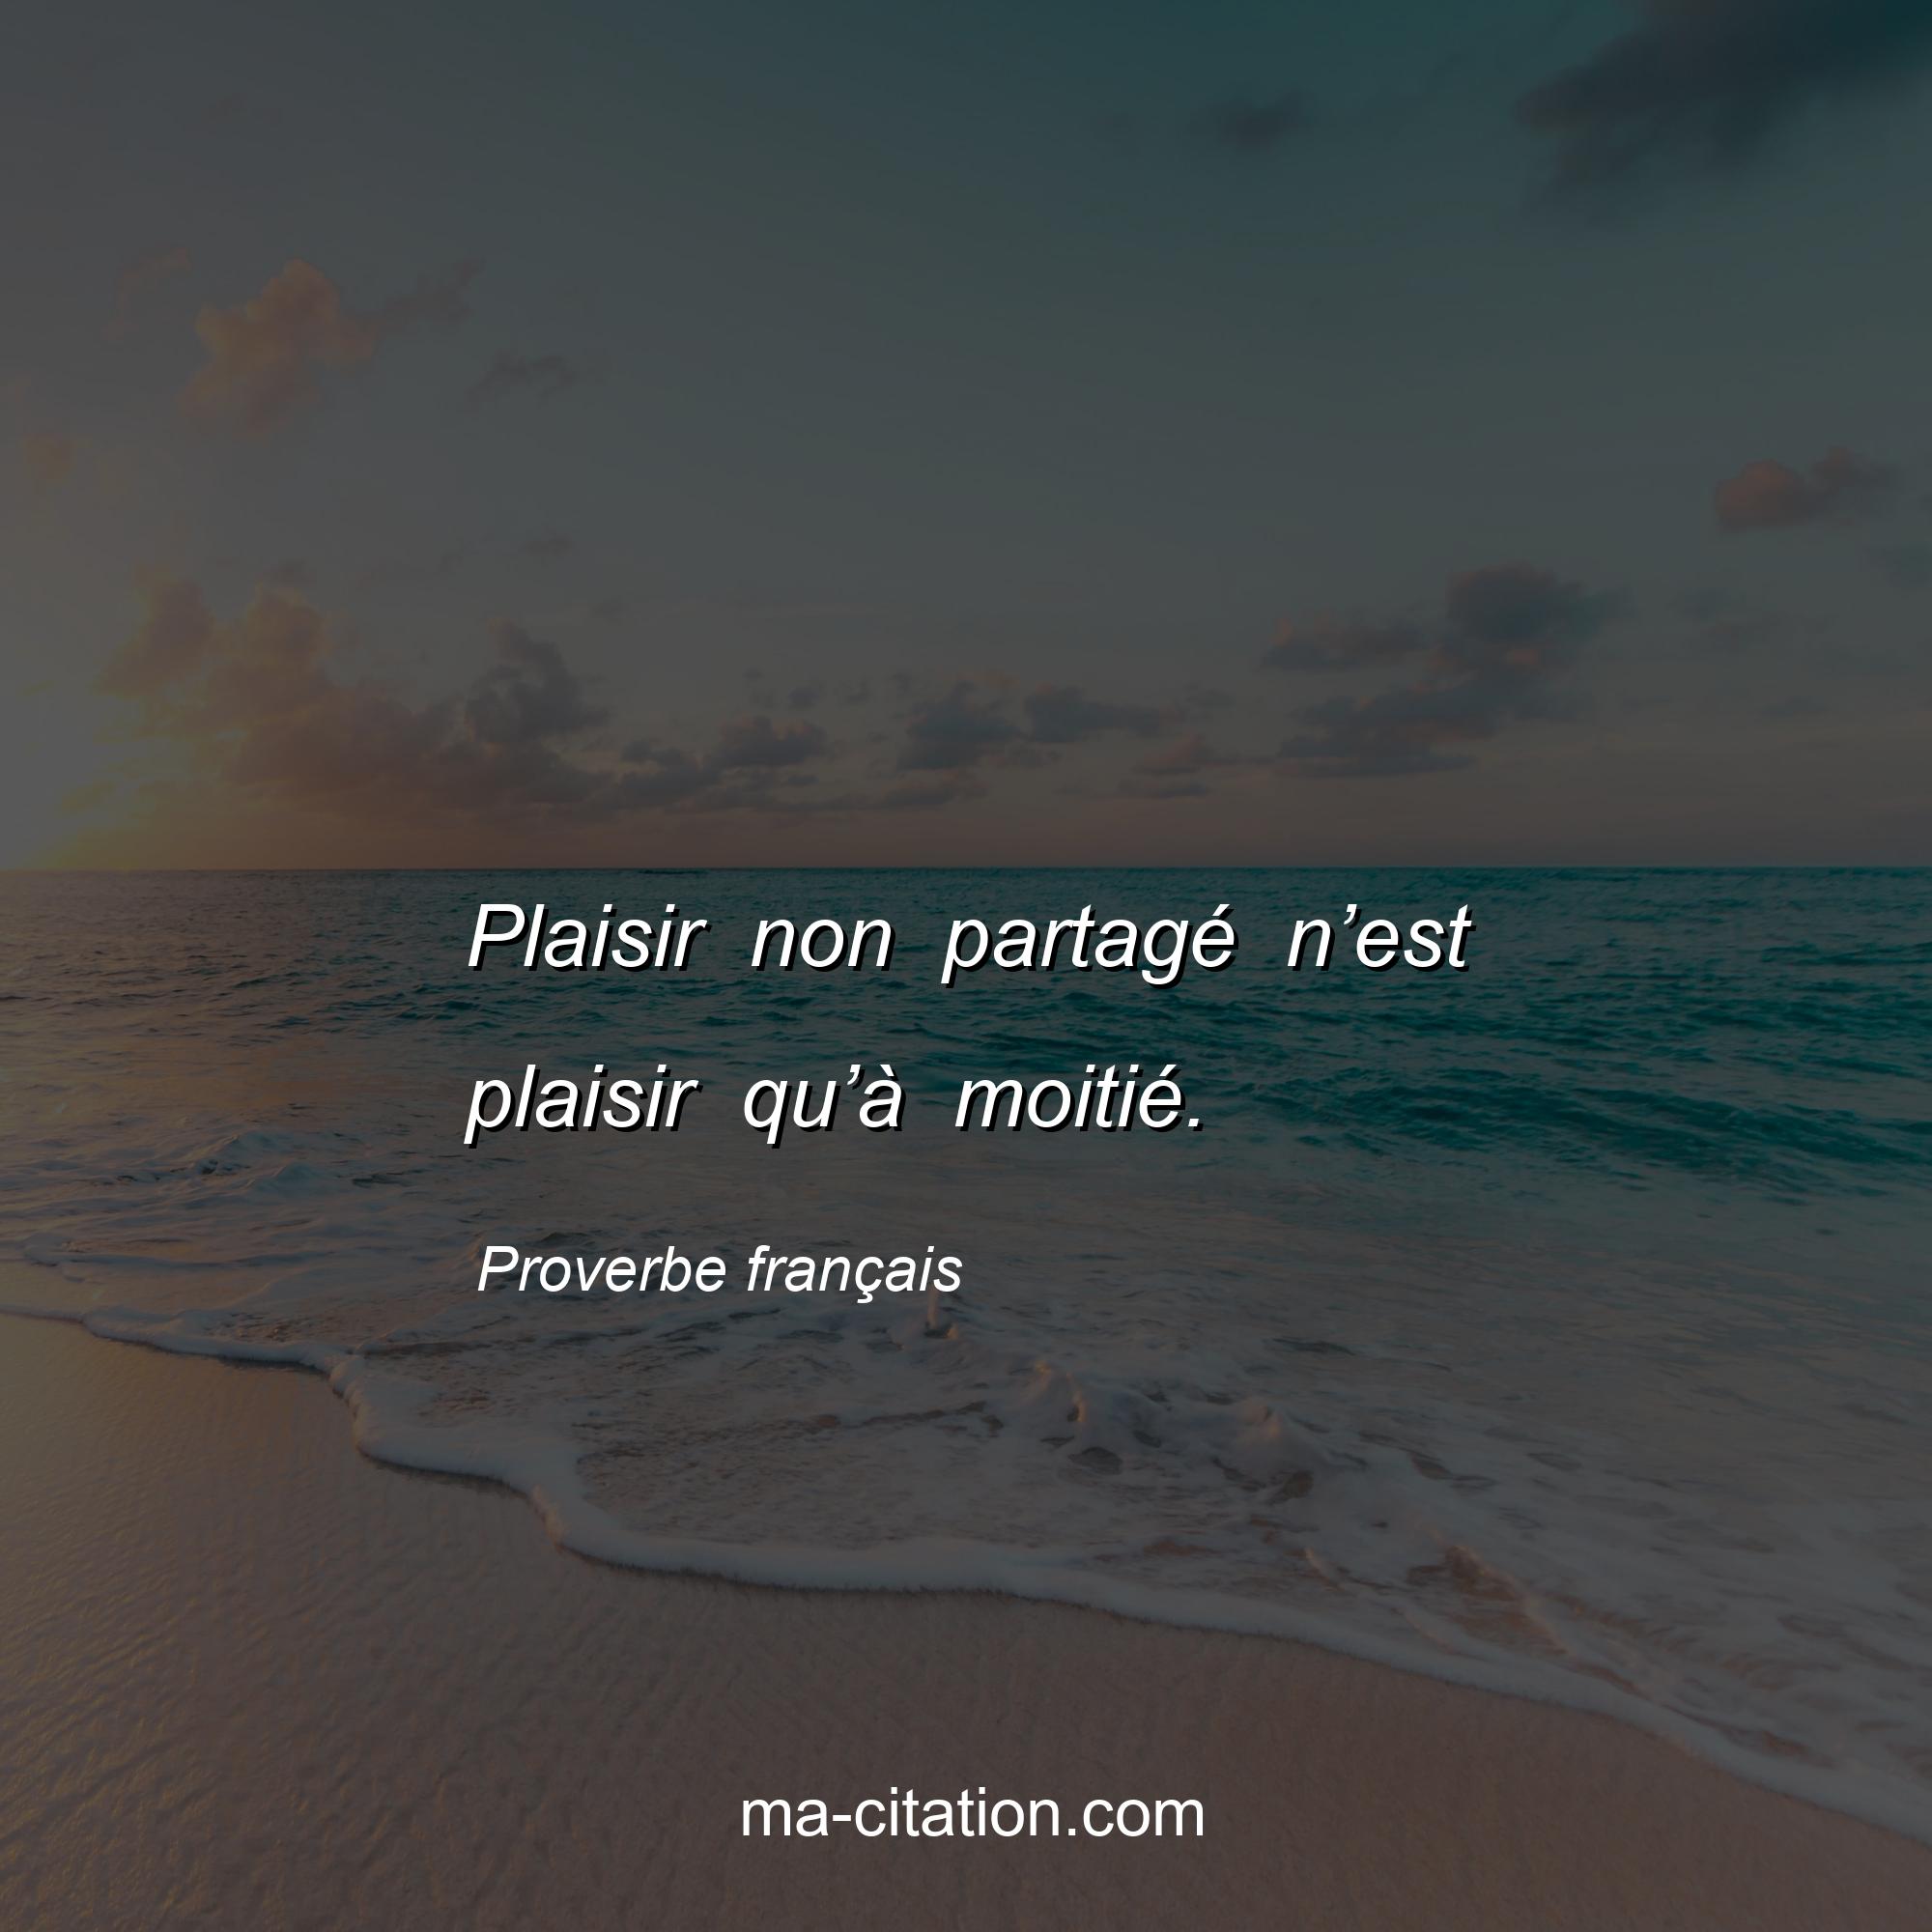 Proverbe français : Plaisir non partagé n’est plaisir qu’à moitié.